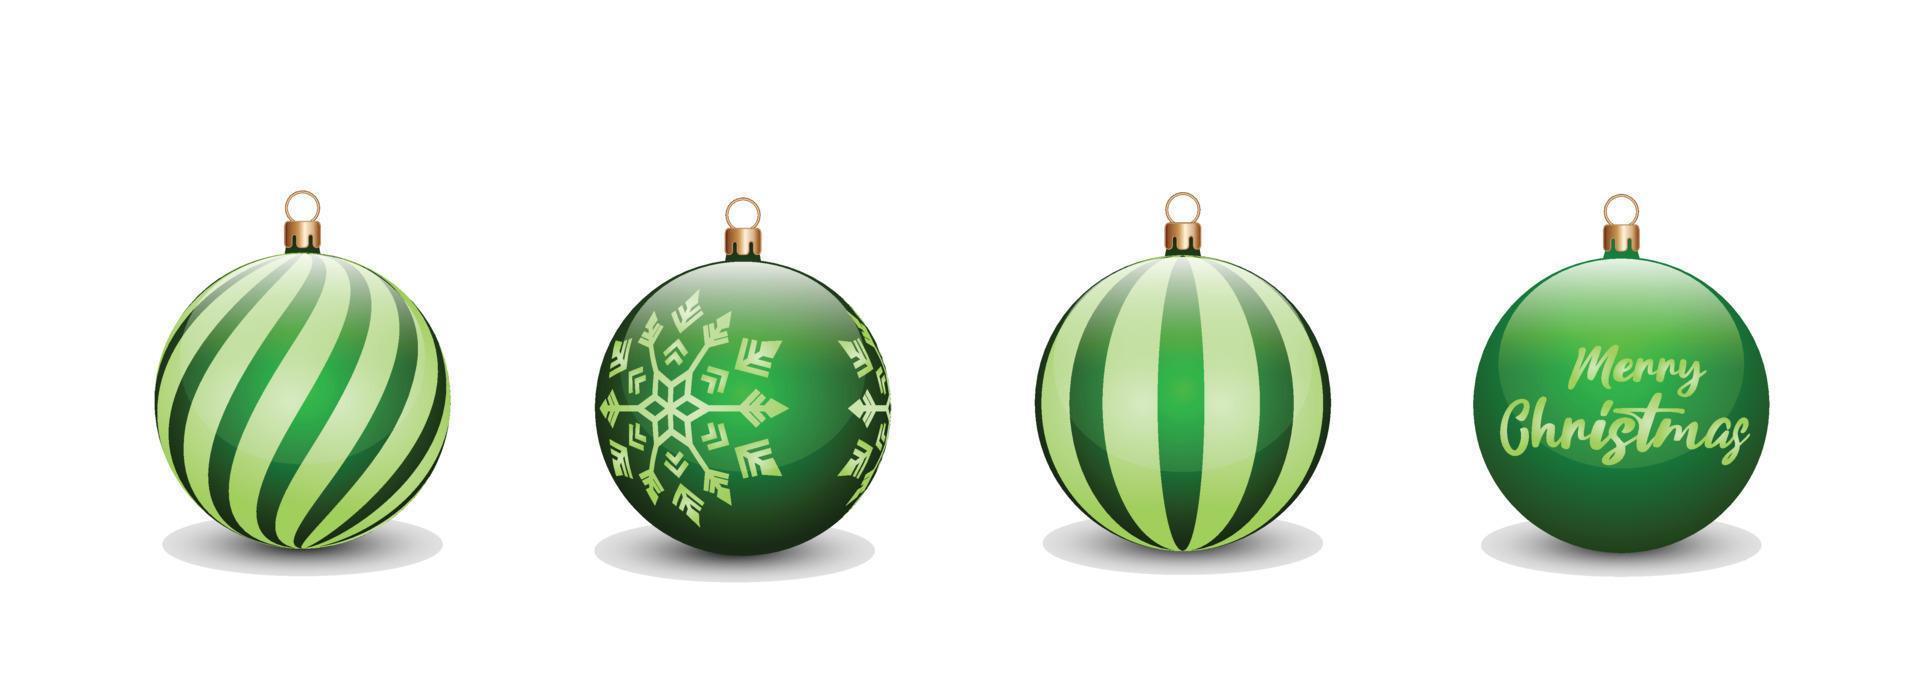 reeks van Kerstmis ballen concept in groen kleur voor Kerstmis dag viering. kan worden gebruikt voor ontwerp middelen, uitnodigingen, affiches, spandoeken, reclameborden met een Kerstmis concept vector